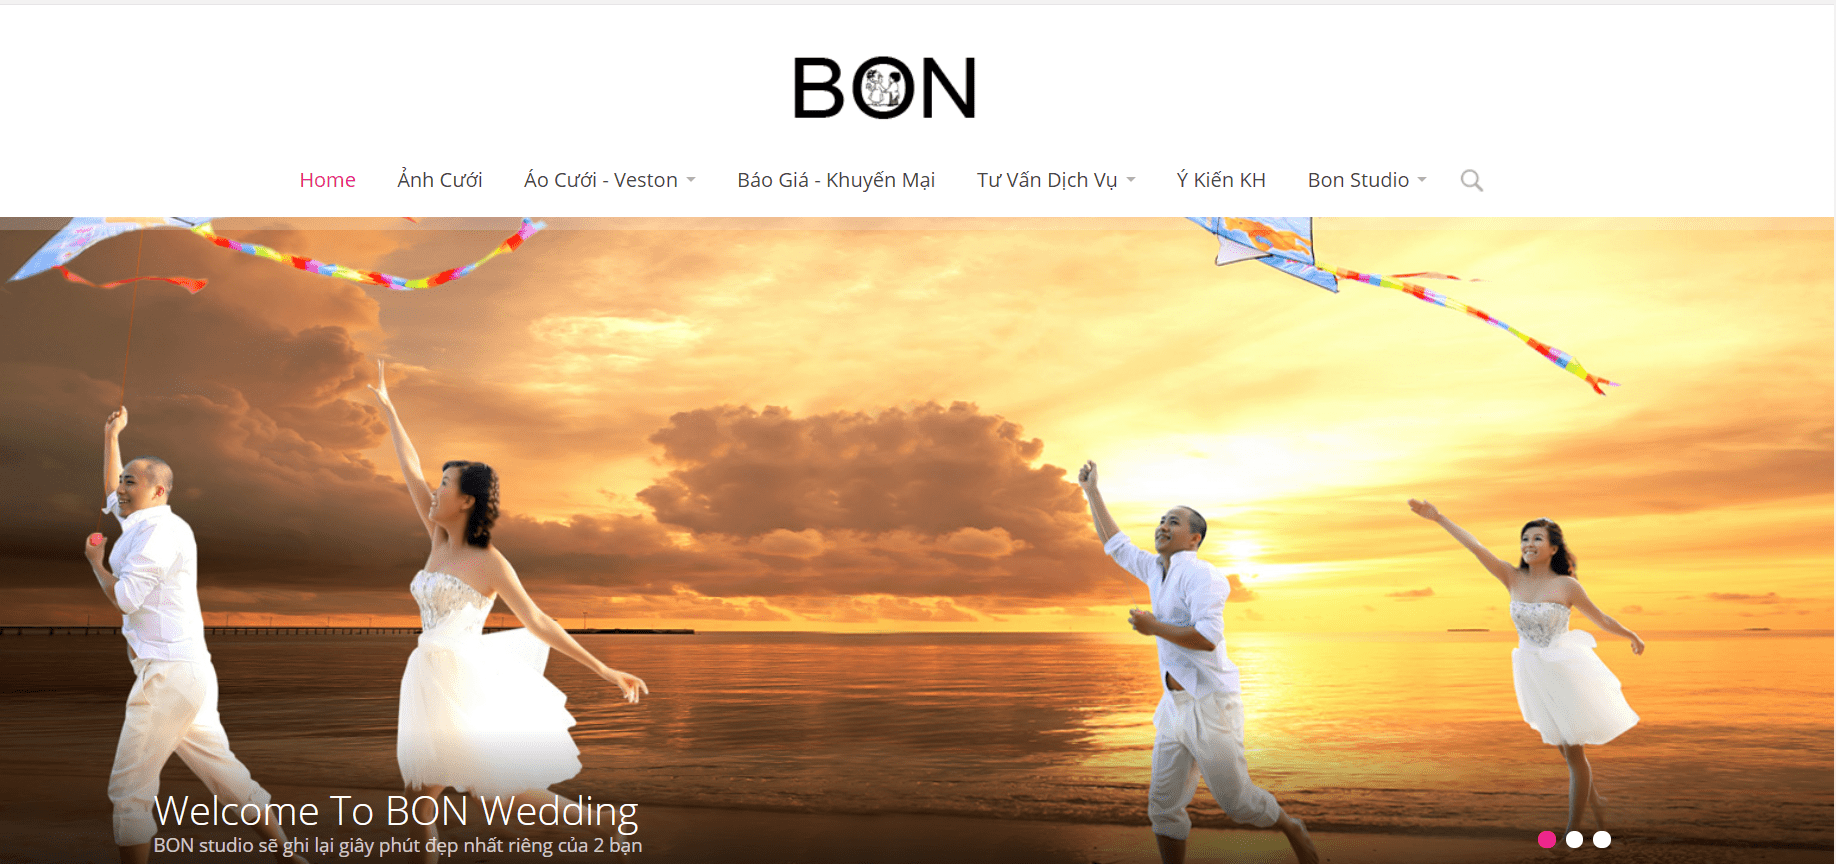 Bon Studio - Dịch Vụ Chụp Ảnh Cưới Giá Rẻ Tại Hà Nội